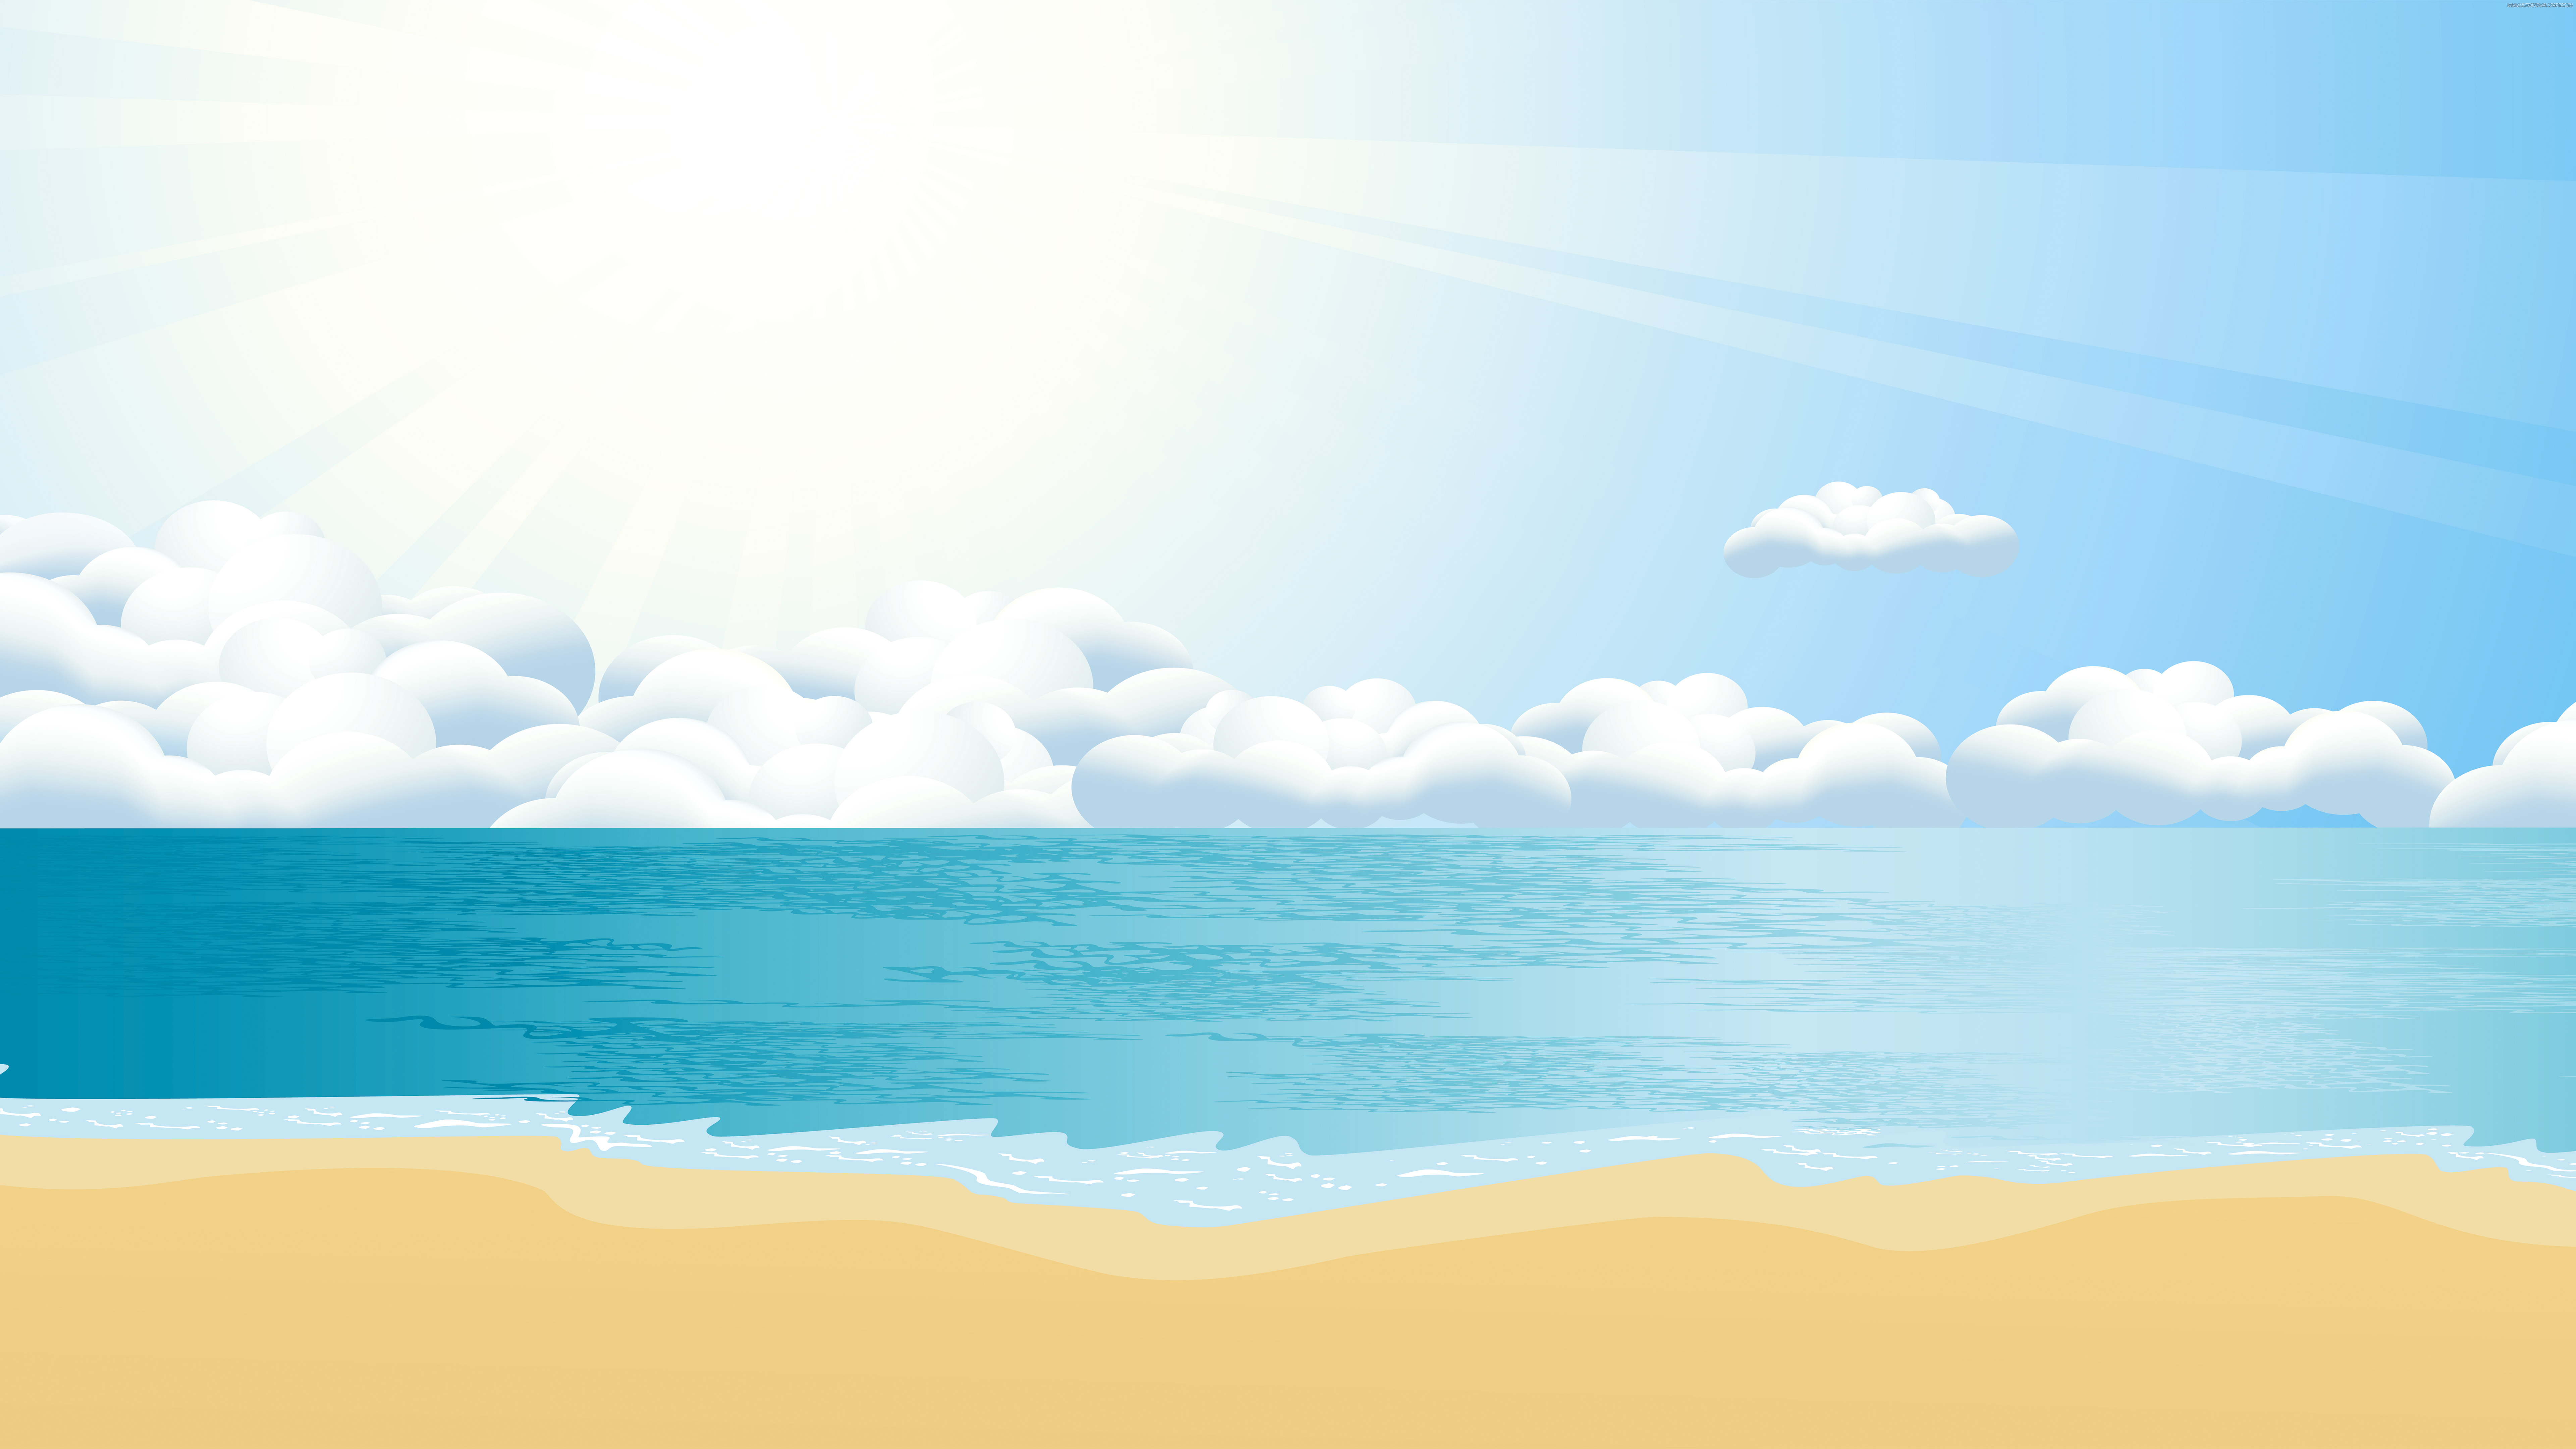 Download 8k 7680x4320 Ultra HD Resolution Desktop Beach Wallpaper